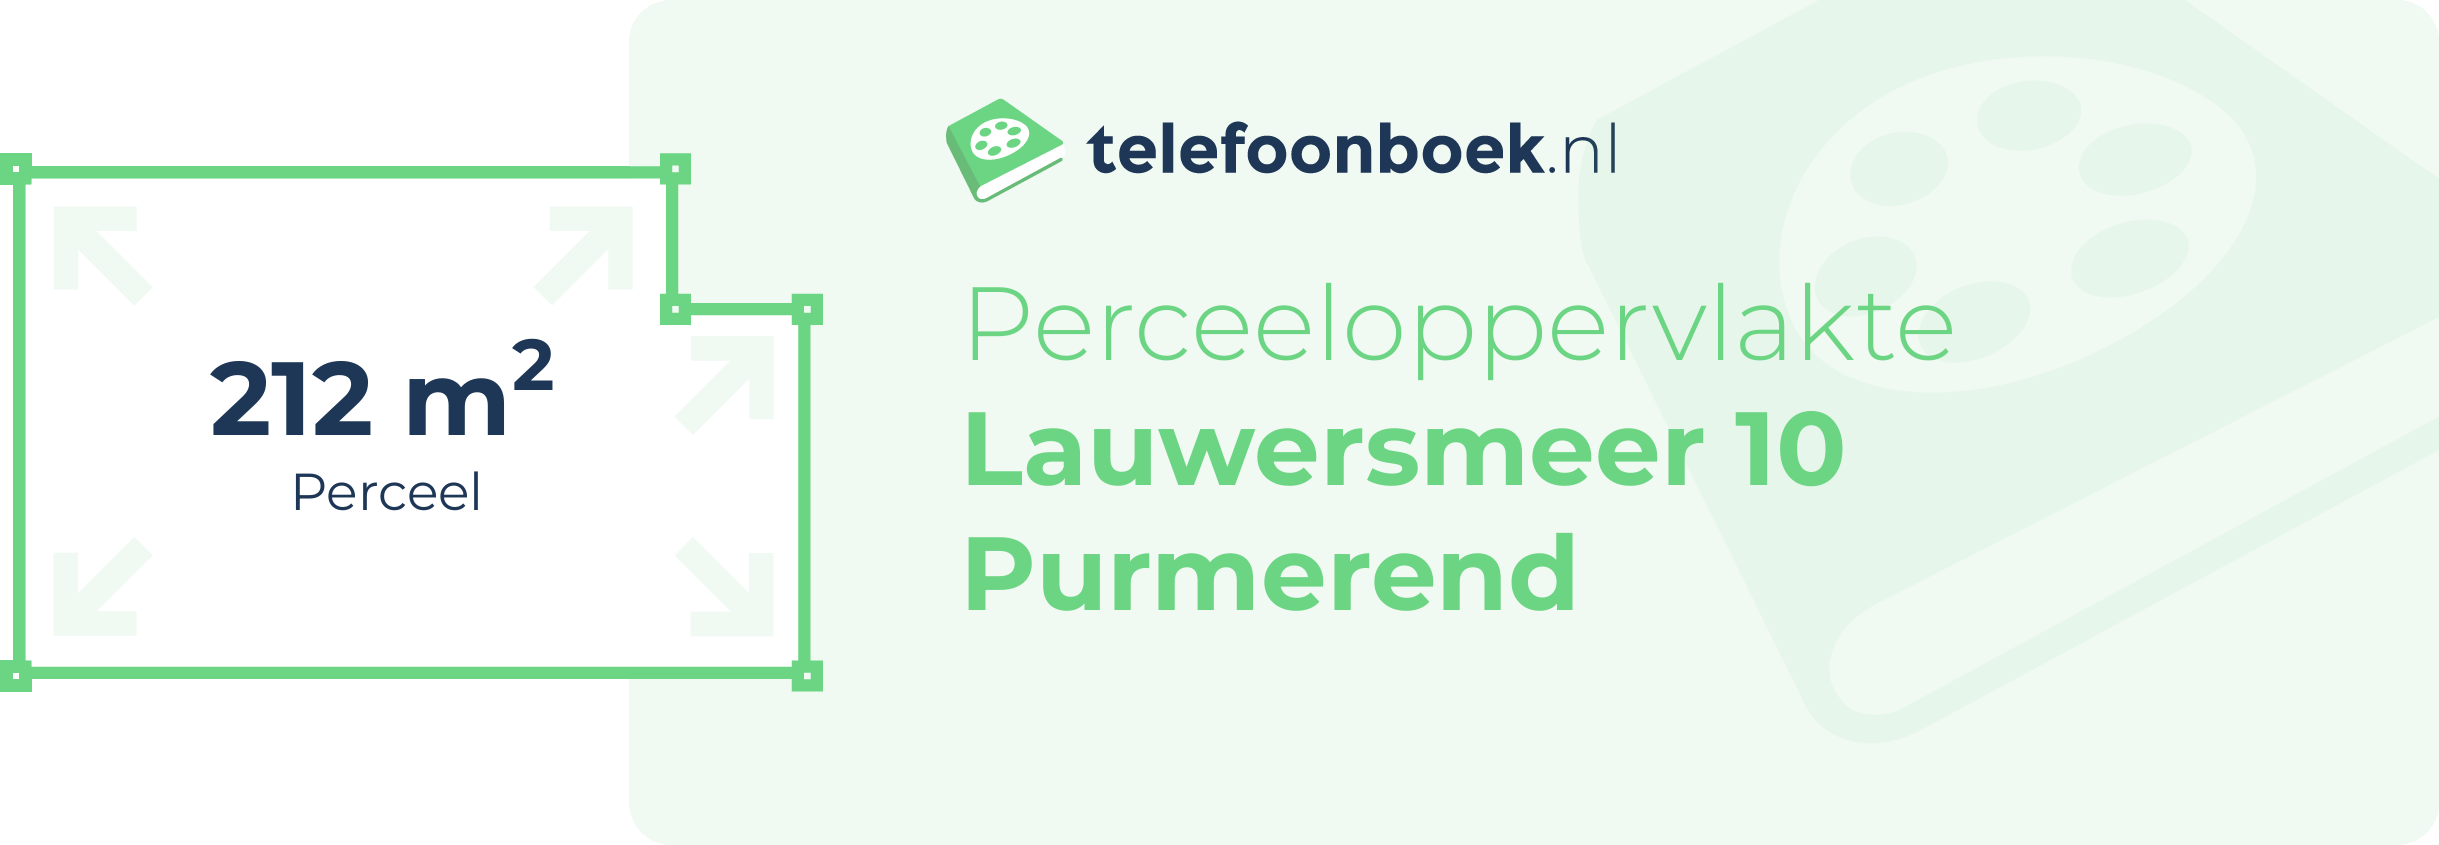 Perceeloppervlakte Lauwersmeer 10 Purmerend